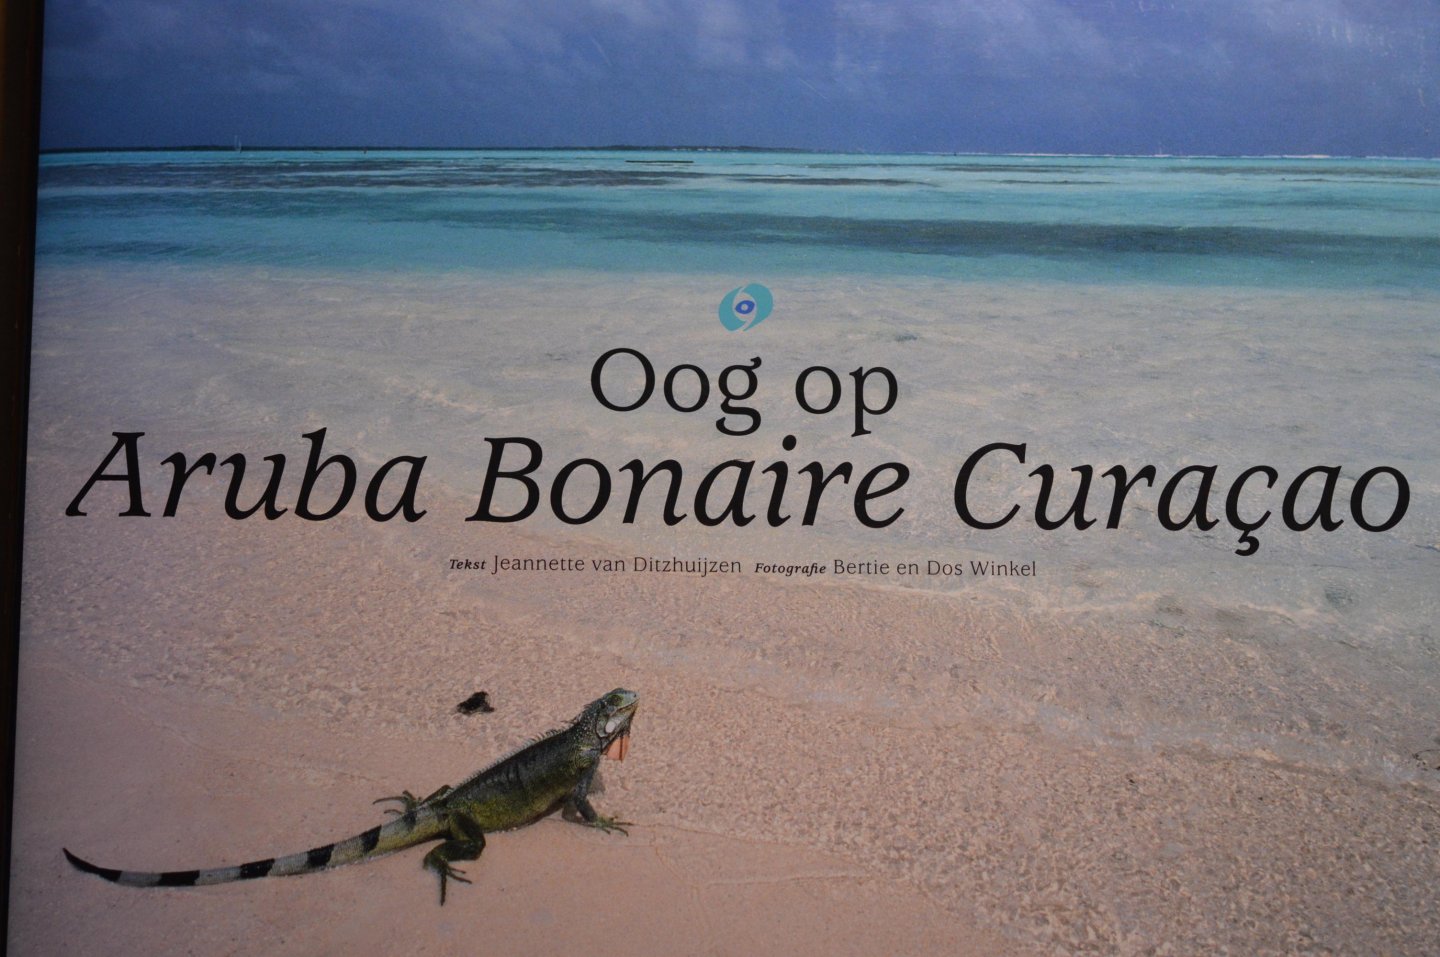 Ditzhuijzen, J. van - Oog op Aruba Bonaire Curacao / geschiedenis, cultuur en natuur van de ABC-eilanden